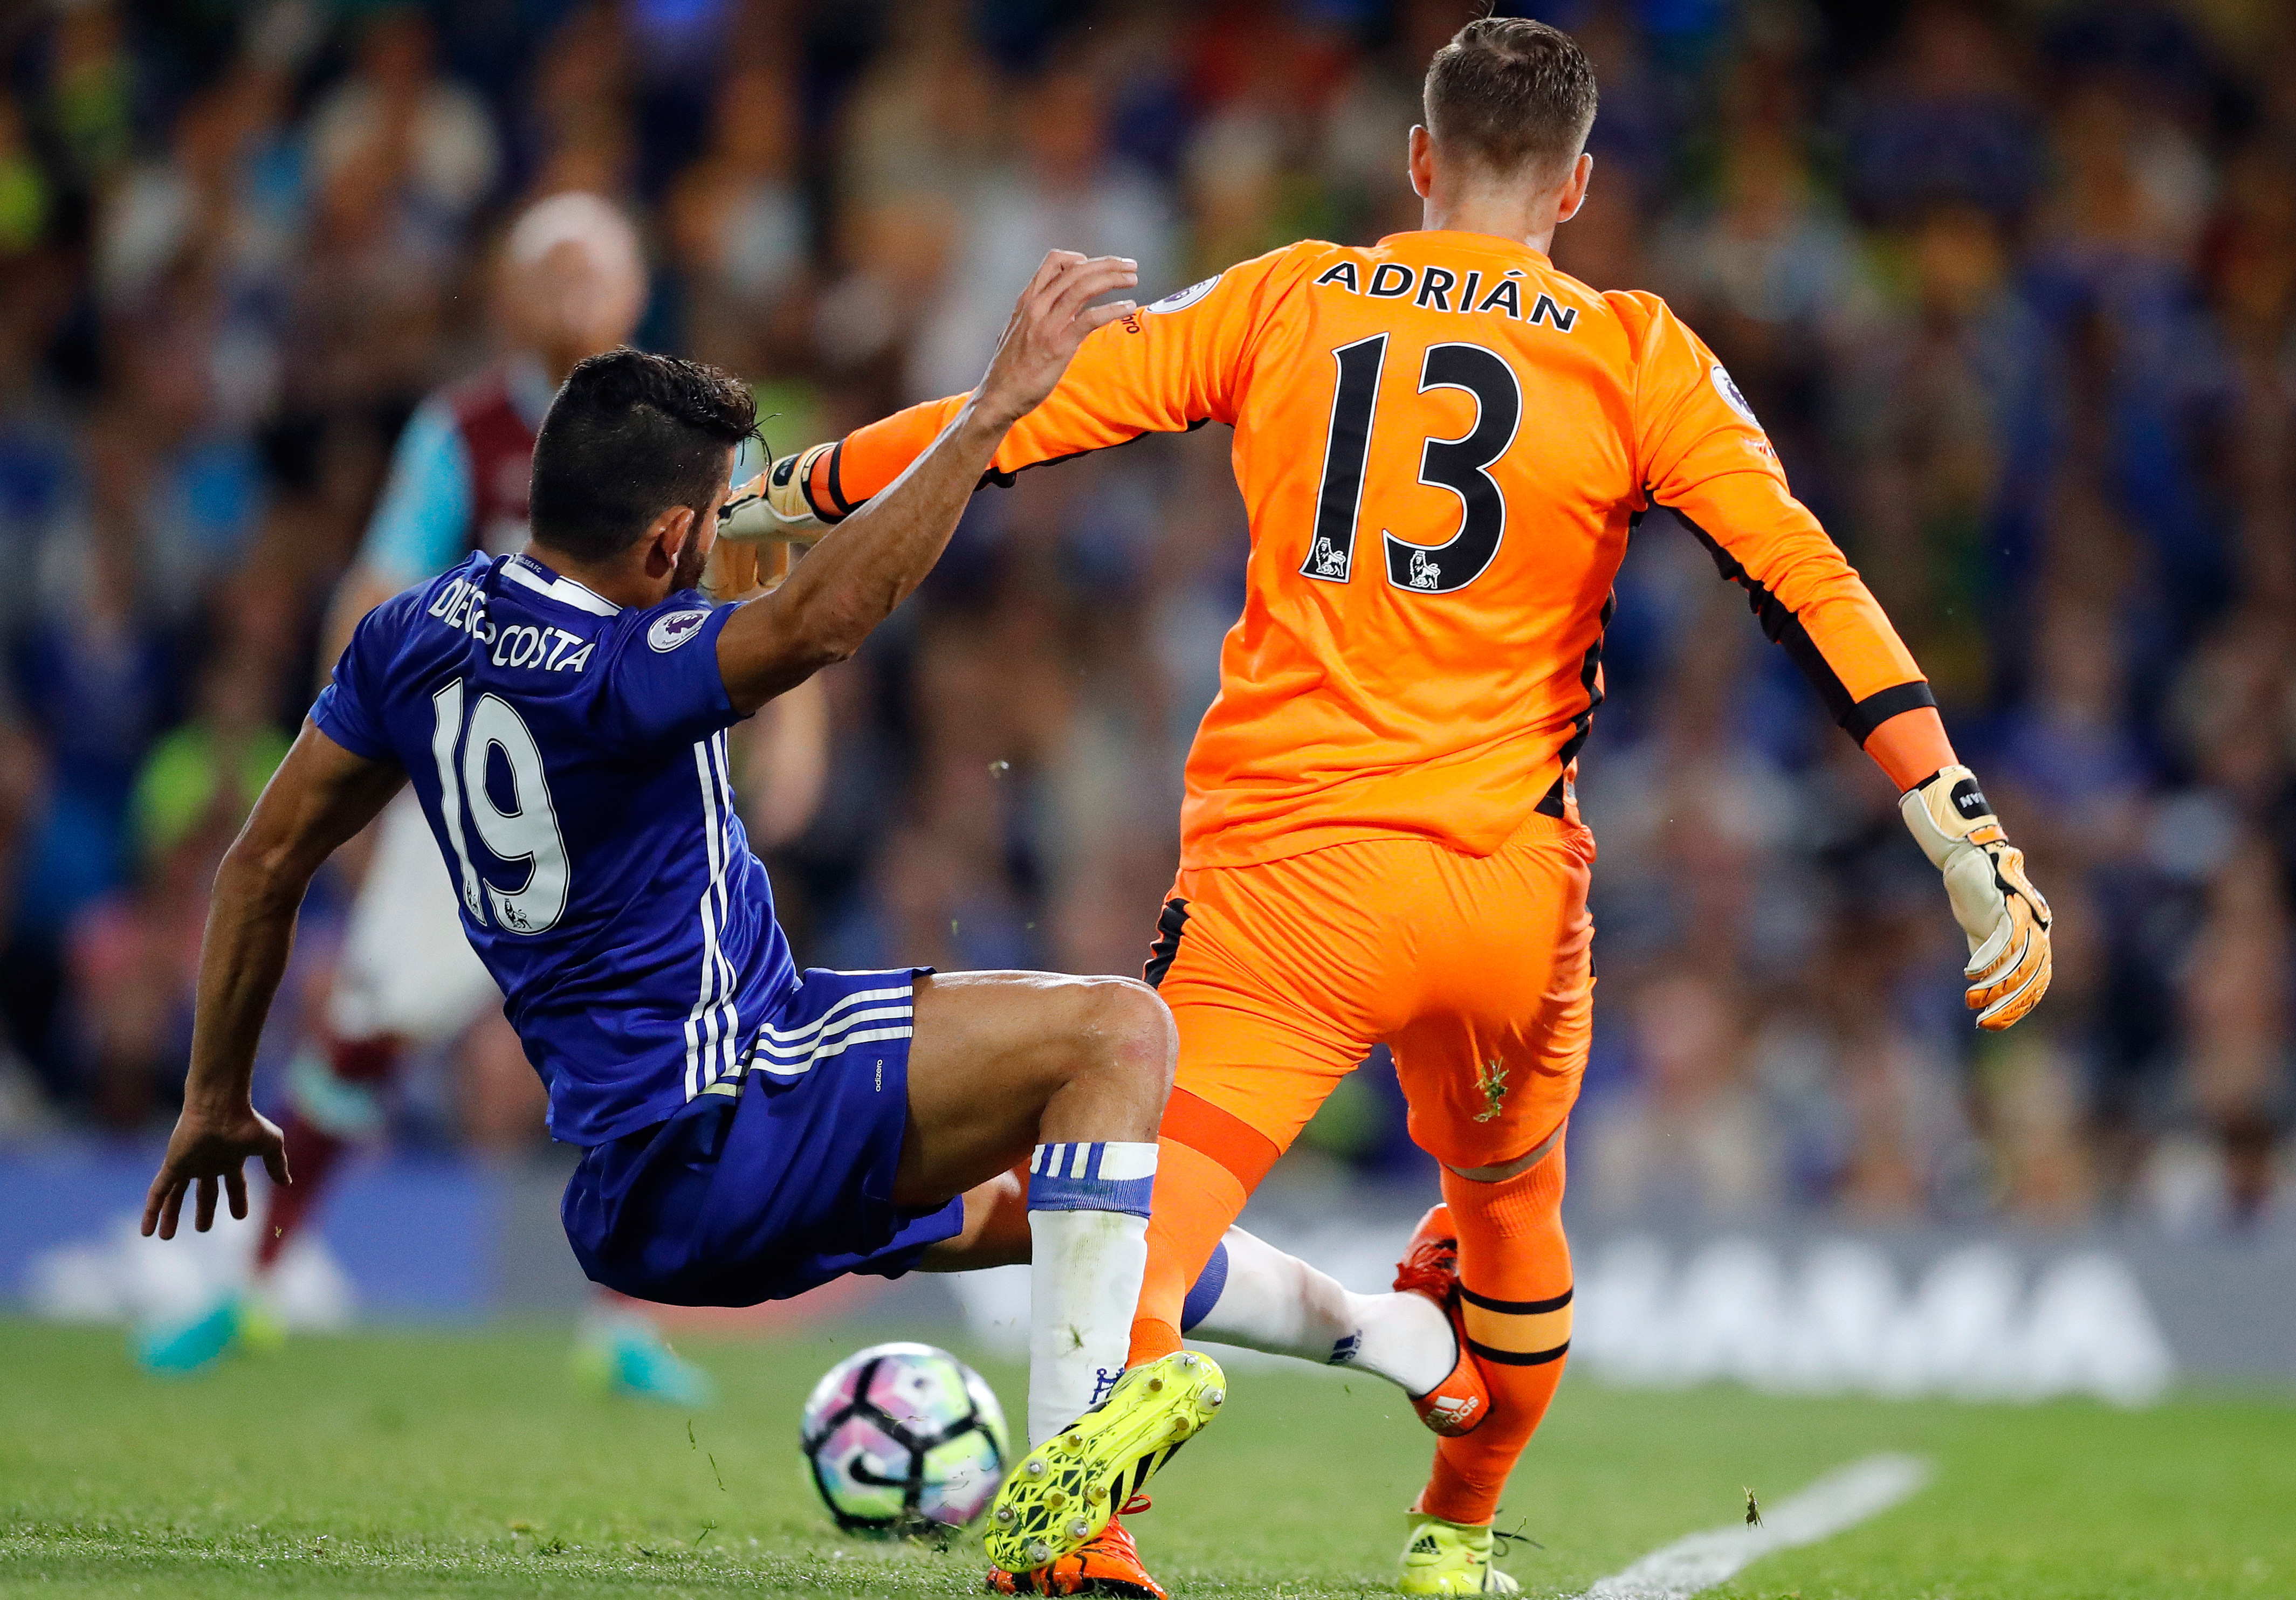 De wilde tackle van Chelsea-spits Diego Costa op West Ham United-doelman Adrián. Scheidsrechter Anthony Taylor vond de charge geen gele kaart waard.